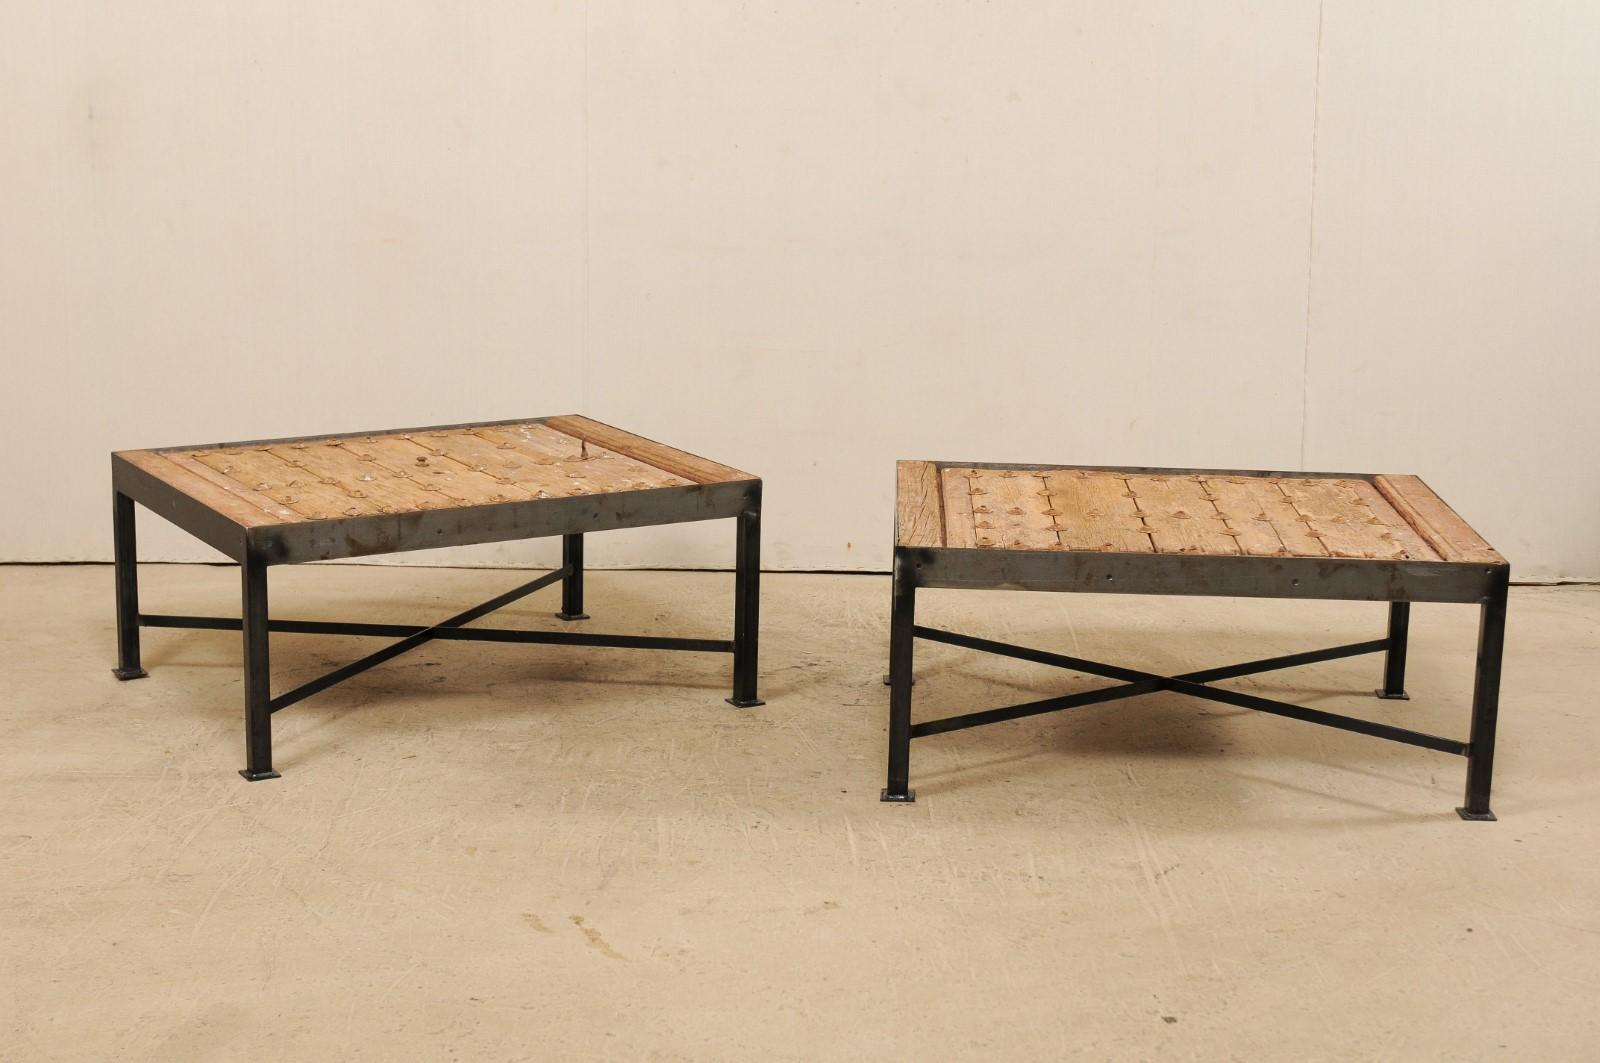 Il s'agit d'une paire de tables basses faites sur mesure à partir d'une porte espagnole du 18ème siècle. Ces tables basses uniques ont été façonnées à partir d'une porte espagnole du XVIIIe siècle, avec un plateau en planches de bois, à la patine